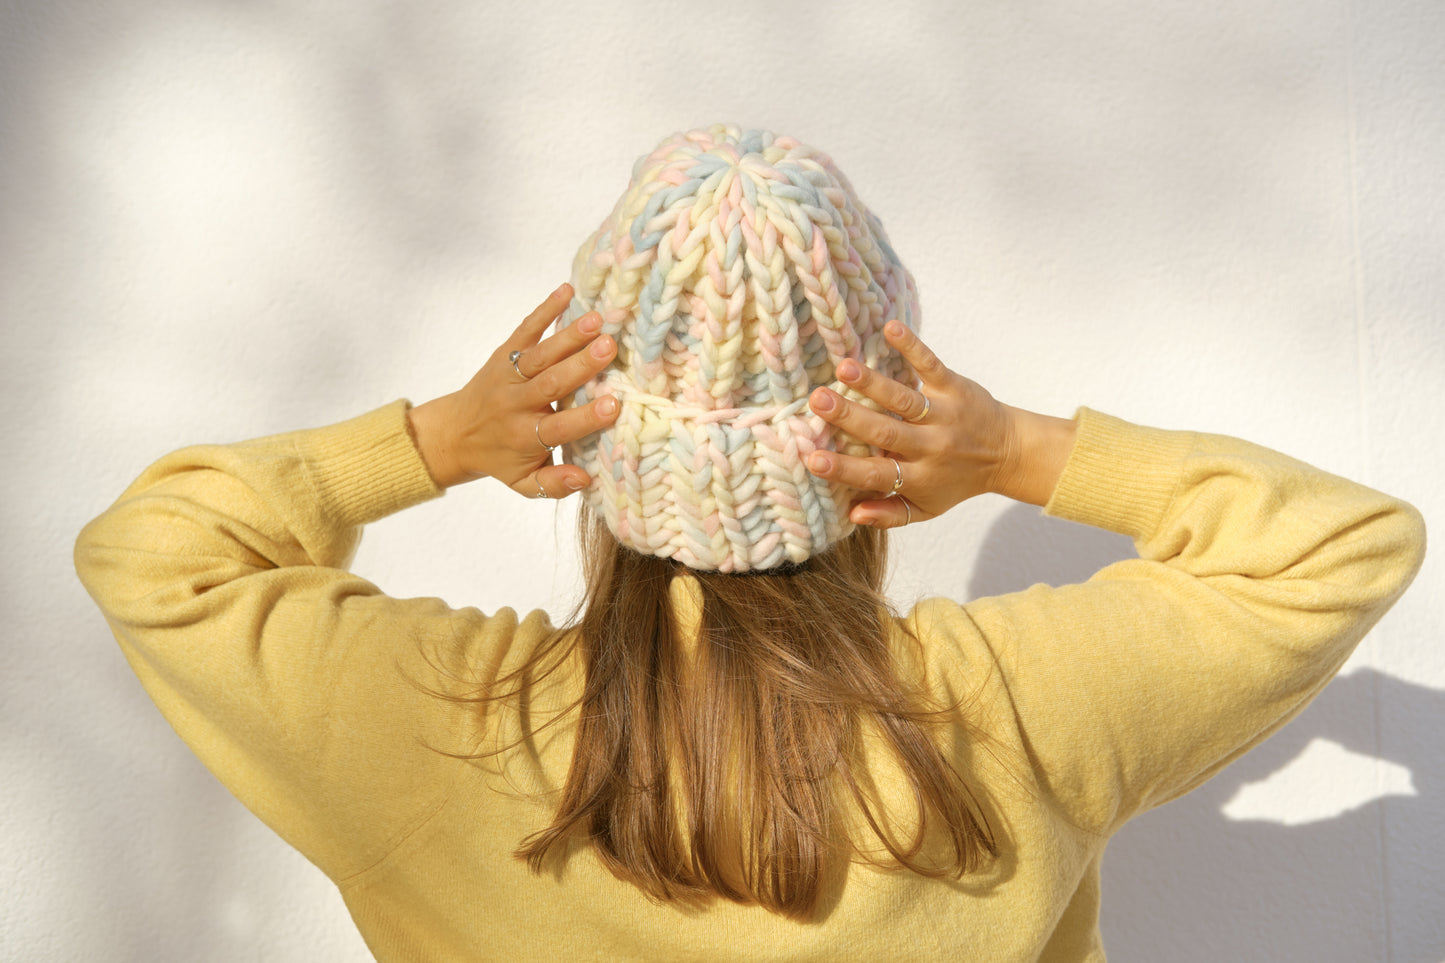 Bonnet en laine brute épais avec motif tricoté